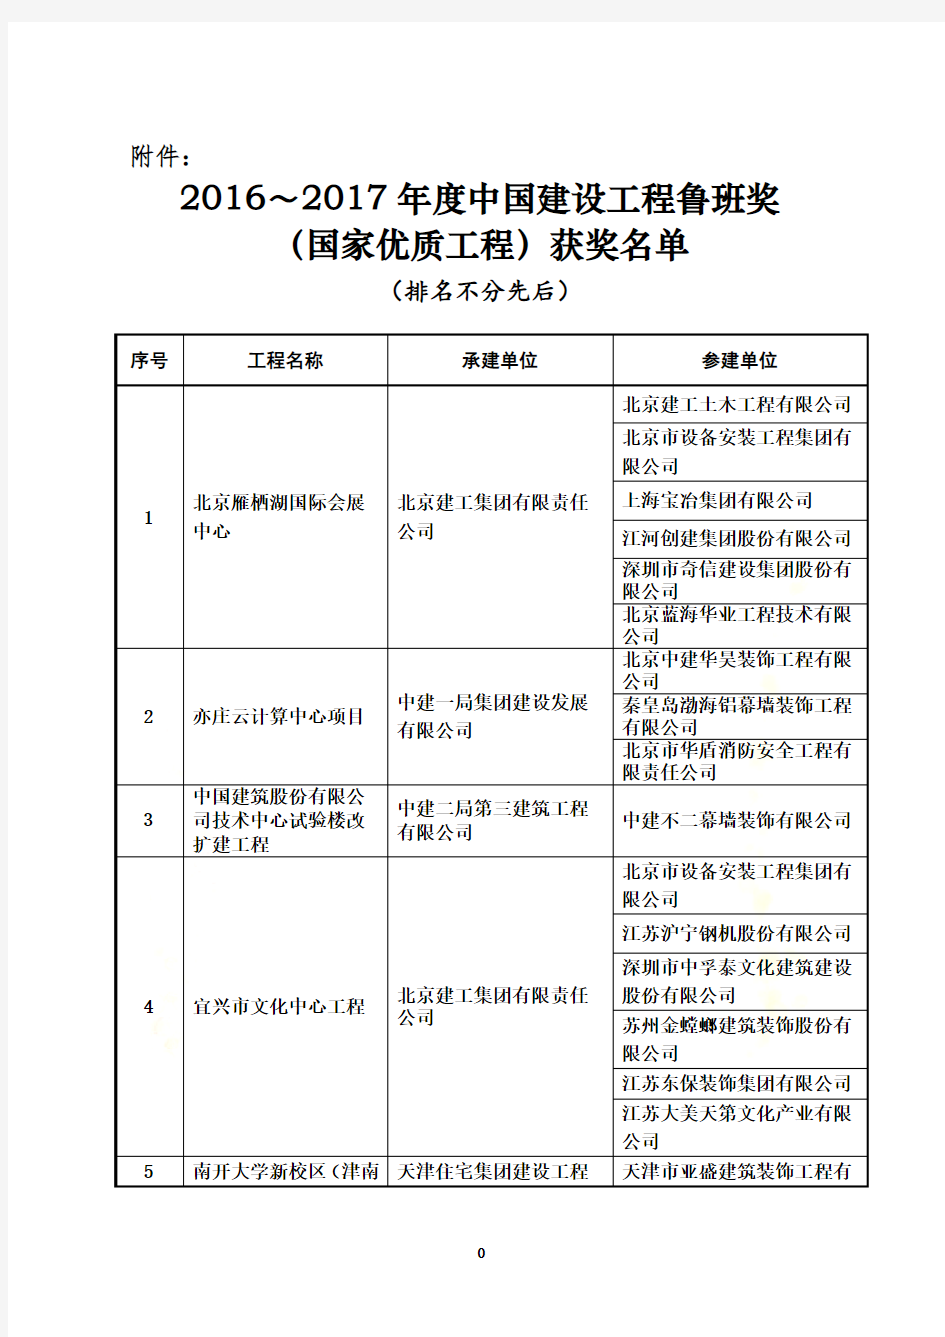 关于颁发2016～2017年度中国建设工程鲁班奖(国家优质工程)获奖名单